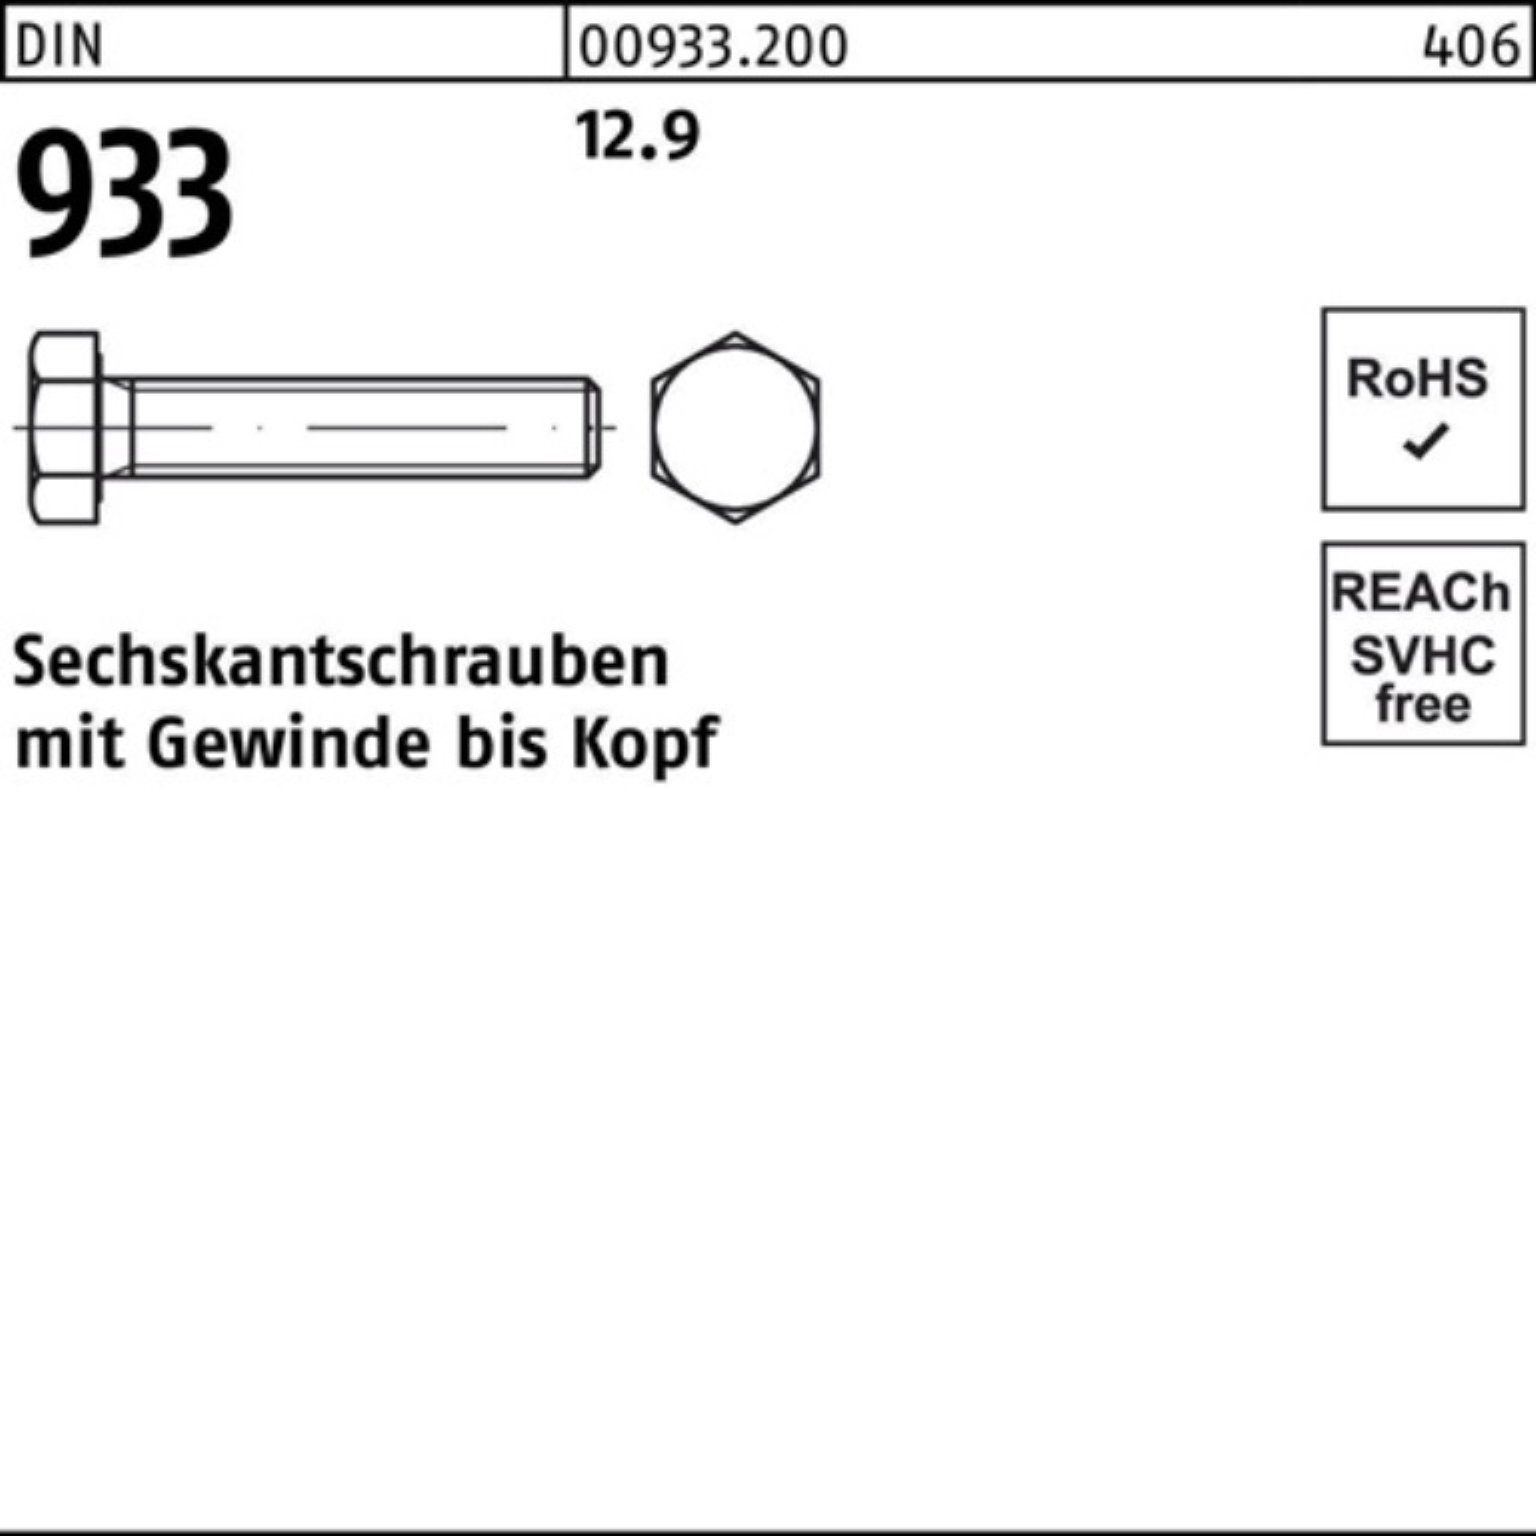 Stück DIN 40 933 Reyher VG 12.9 50 Pack Sechskantschraube 100er M16x 933 DIN Sechskantschraube